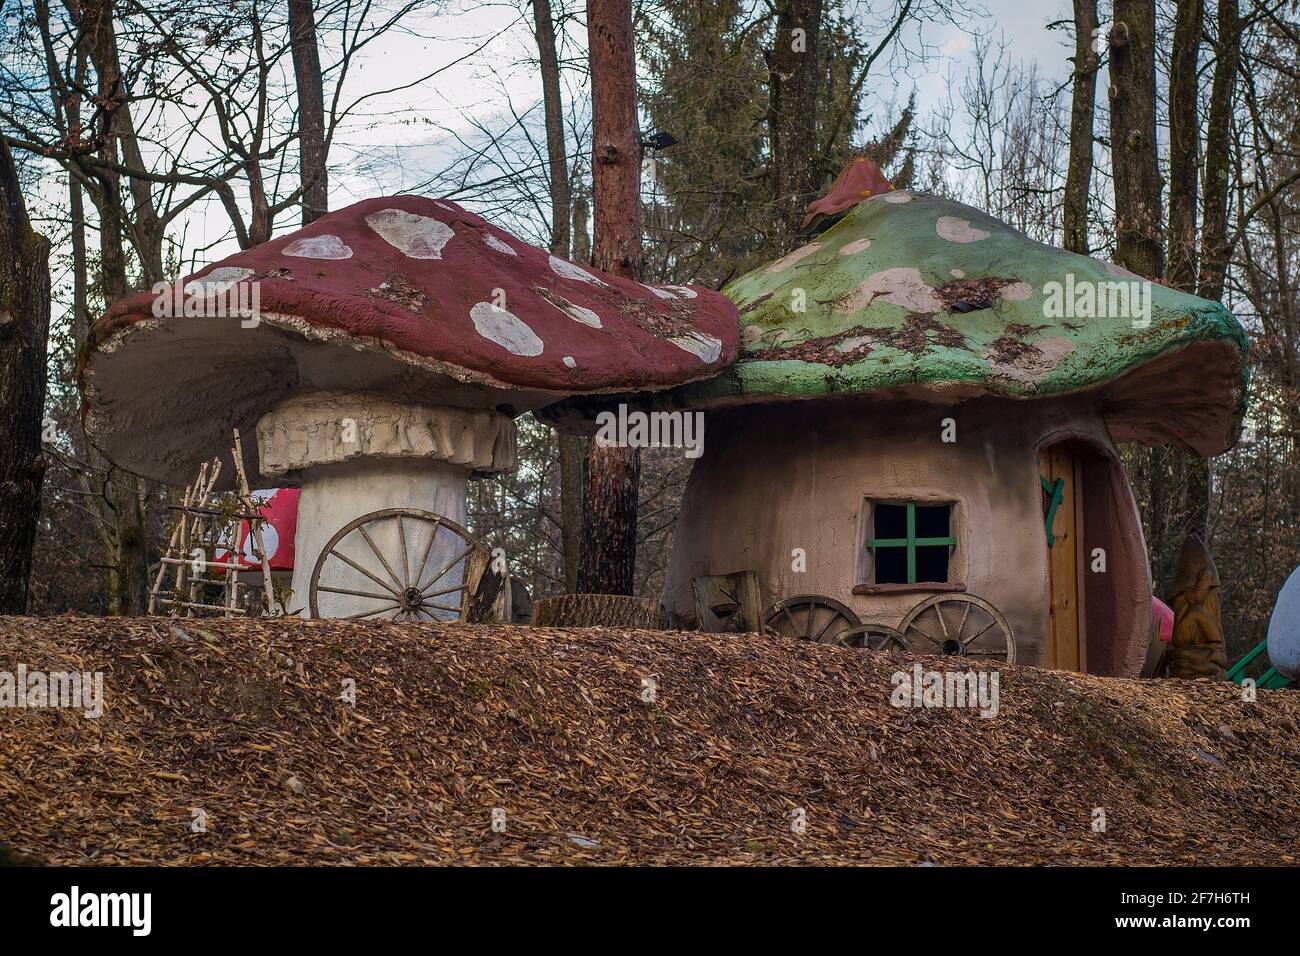 Echte Pilzhäuser in einer ländlichen Umgebung. Pilzförmige Fantasie oder Spielhäuser für Kinder in einem verzauberten Wald. Rotes und grünes Dach mit weißen Punkten. Stockfoto